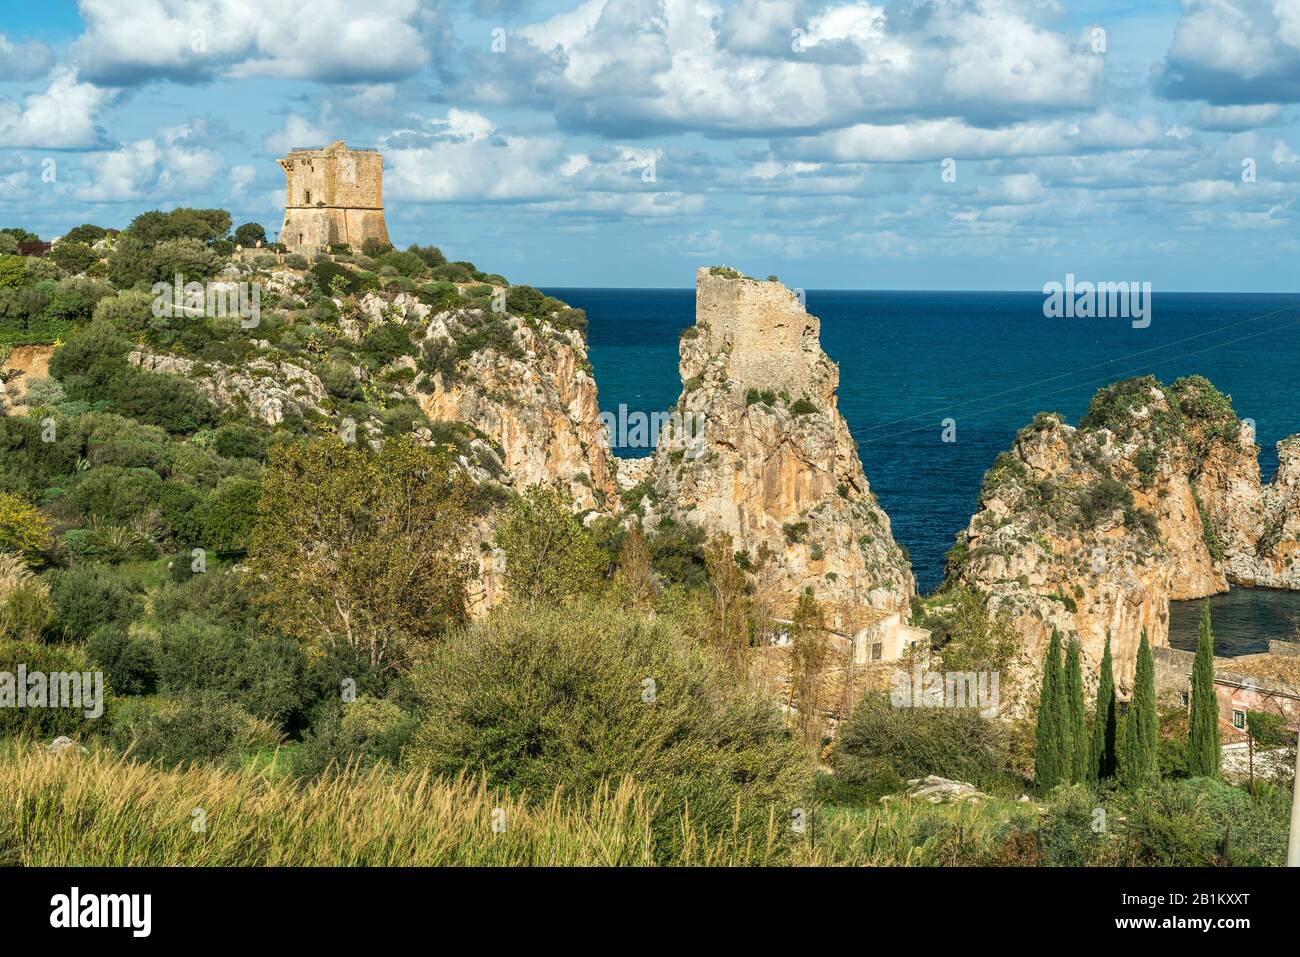 Wachturm auf den Klippen von Scopello, Sizilien, Italien, Europa  |  watch tower on the cliffs of  Scopello, Sicily, Italy, Europe Stock Photo